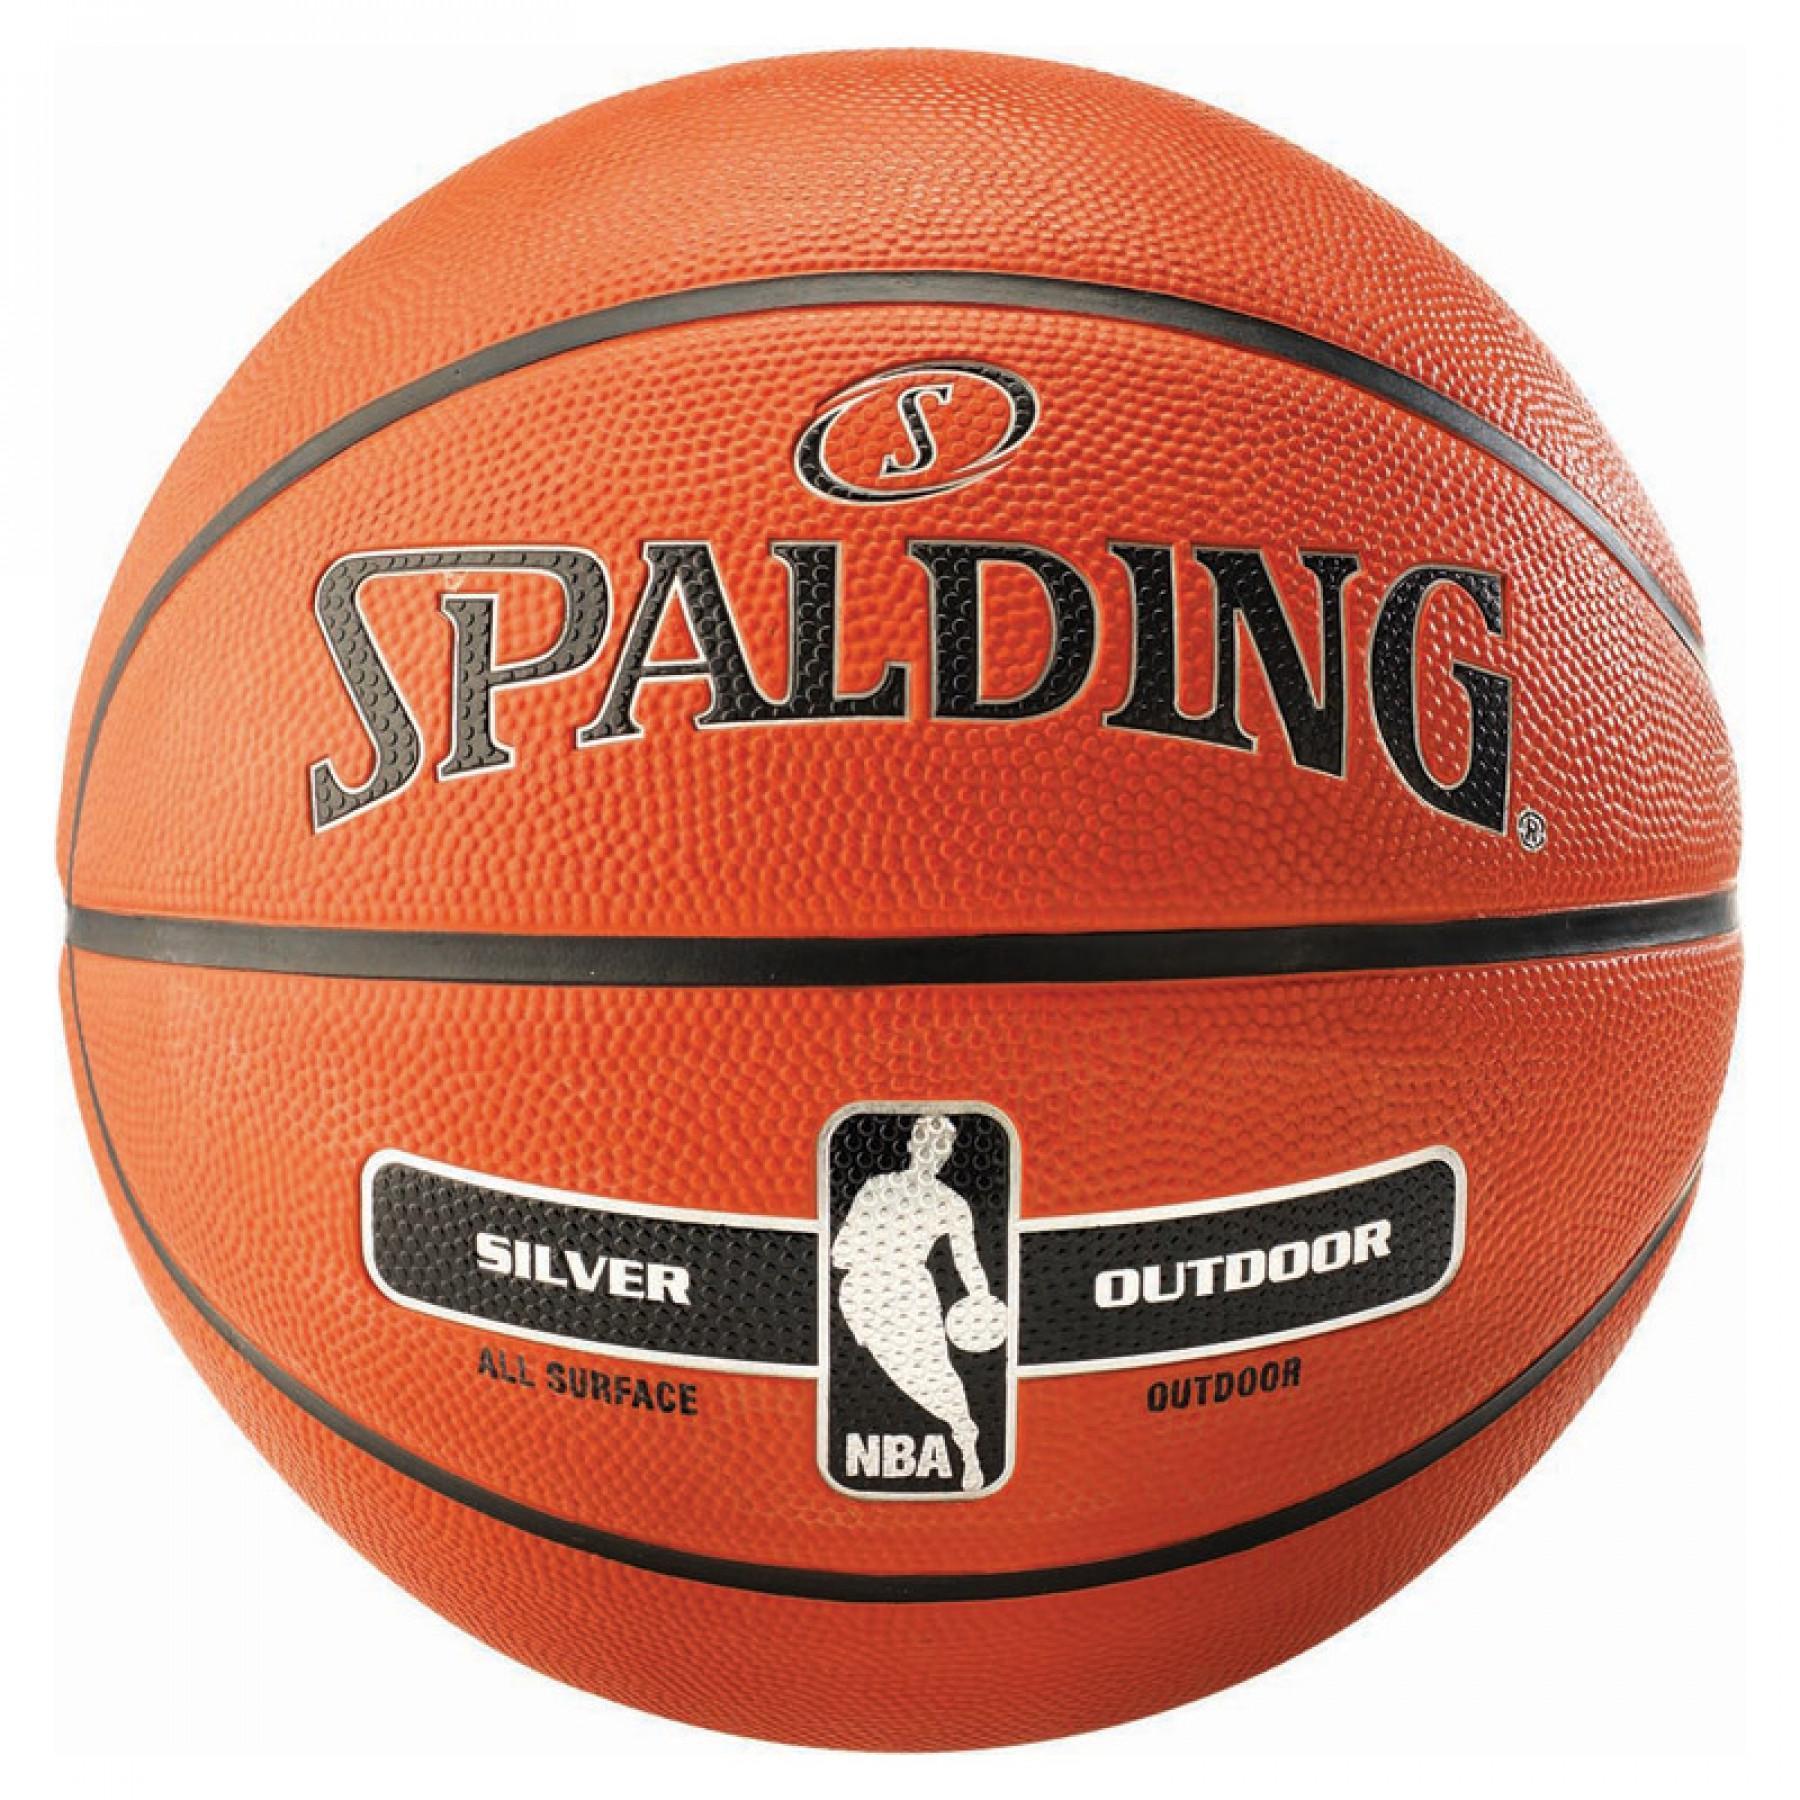 Ballon Spalding NBA Silver (65-887z)